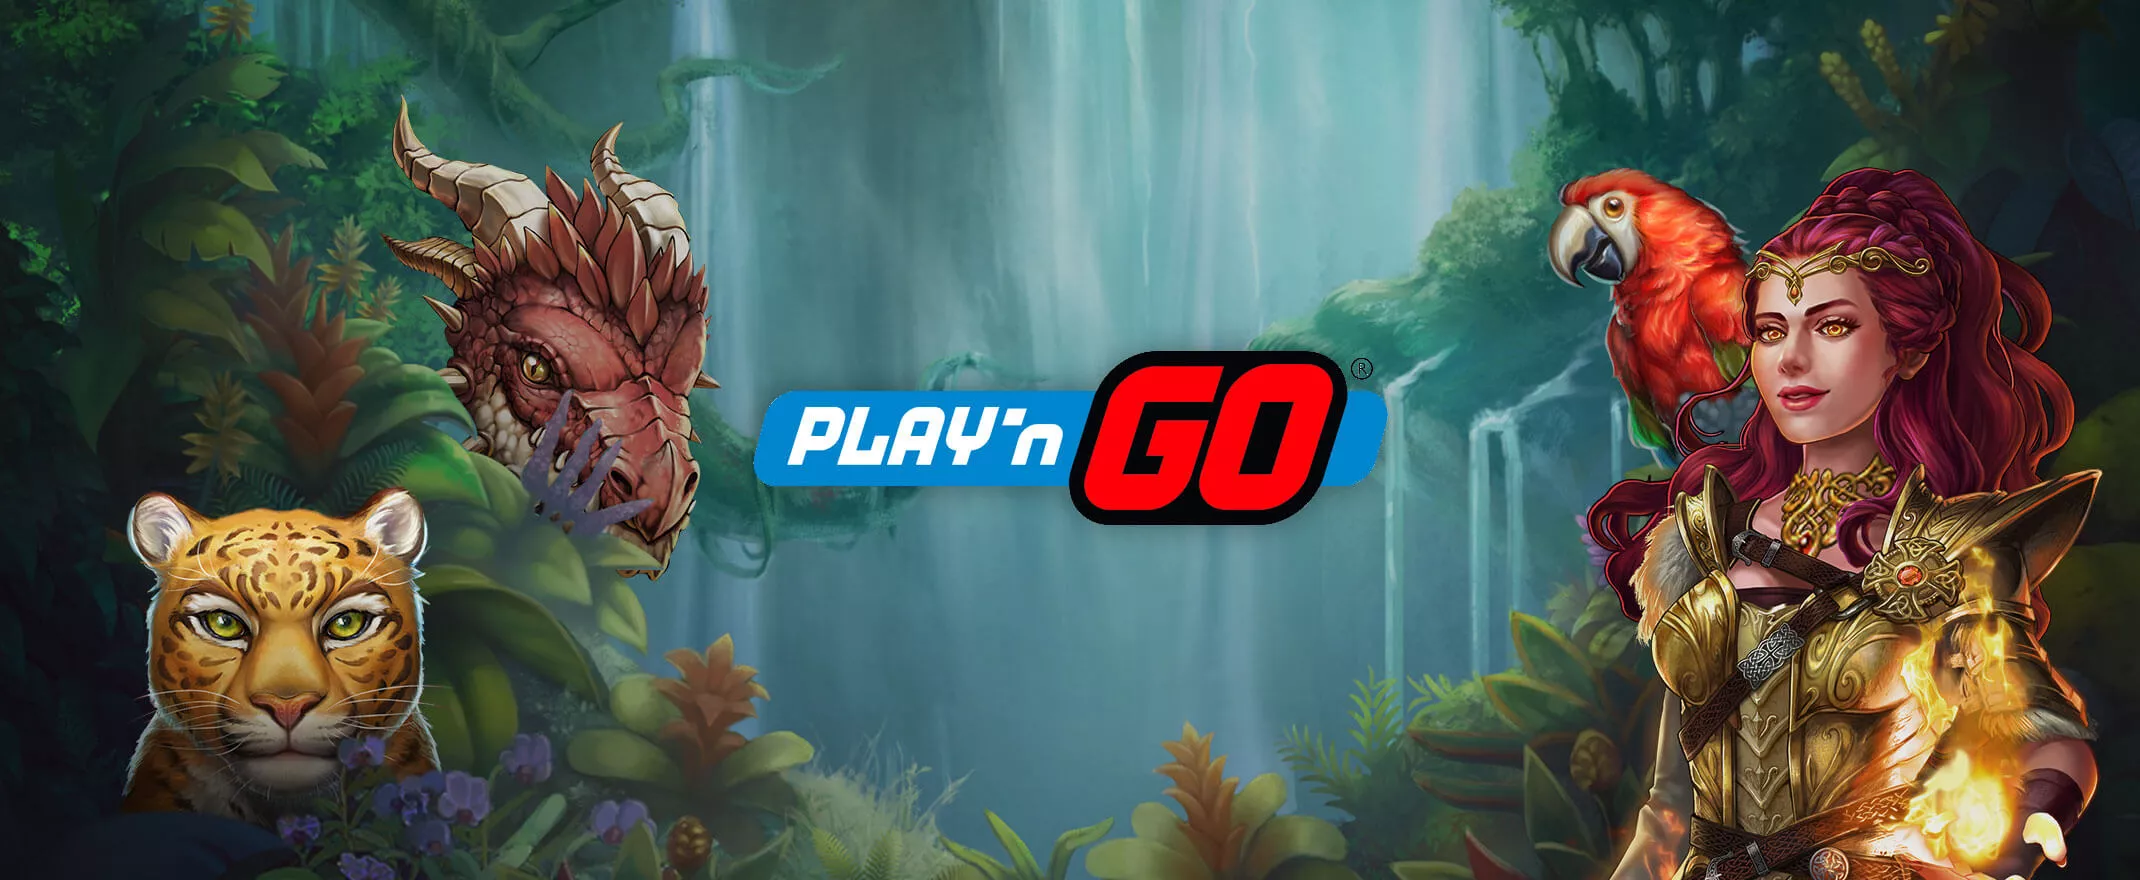 Play'n GO slots